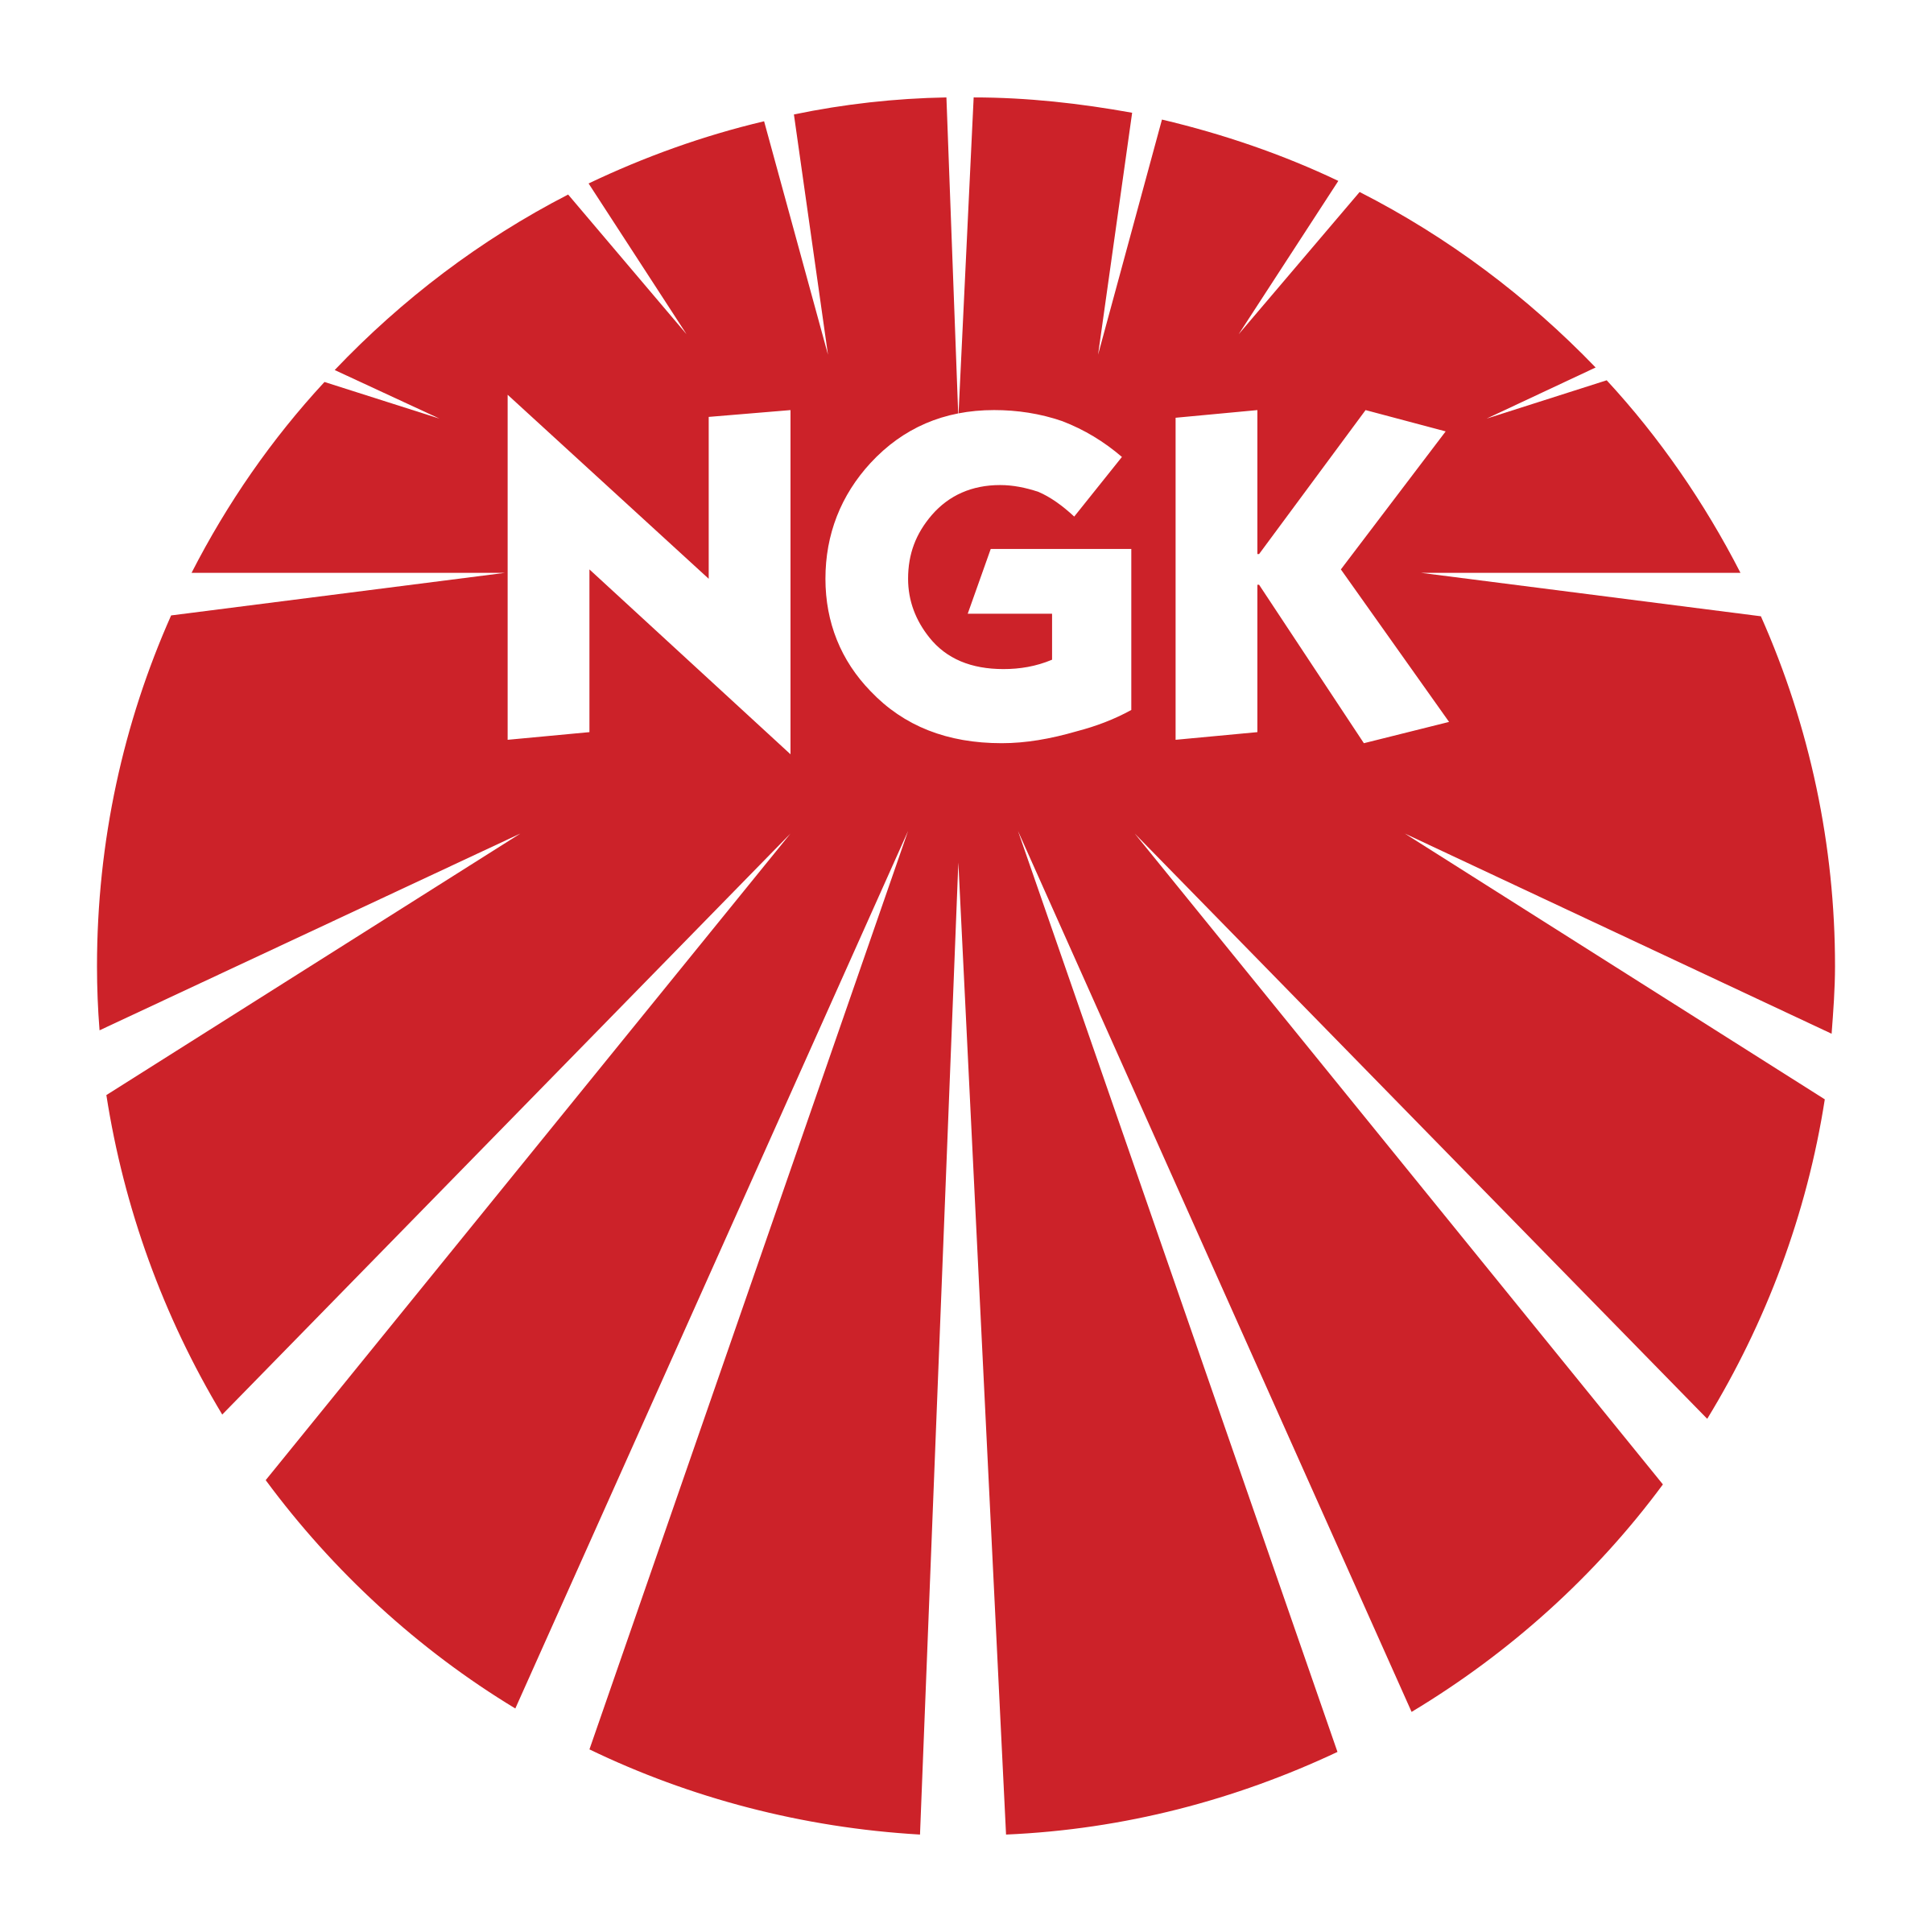 Nkg Logo - NGK Logo PNG Transparent & SVG Vector - Freebie Supply